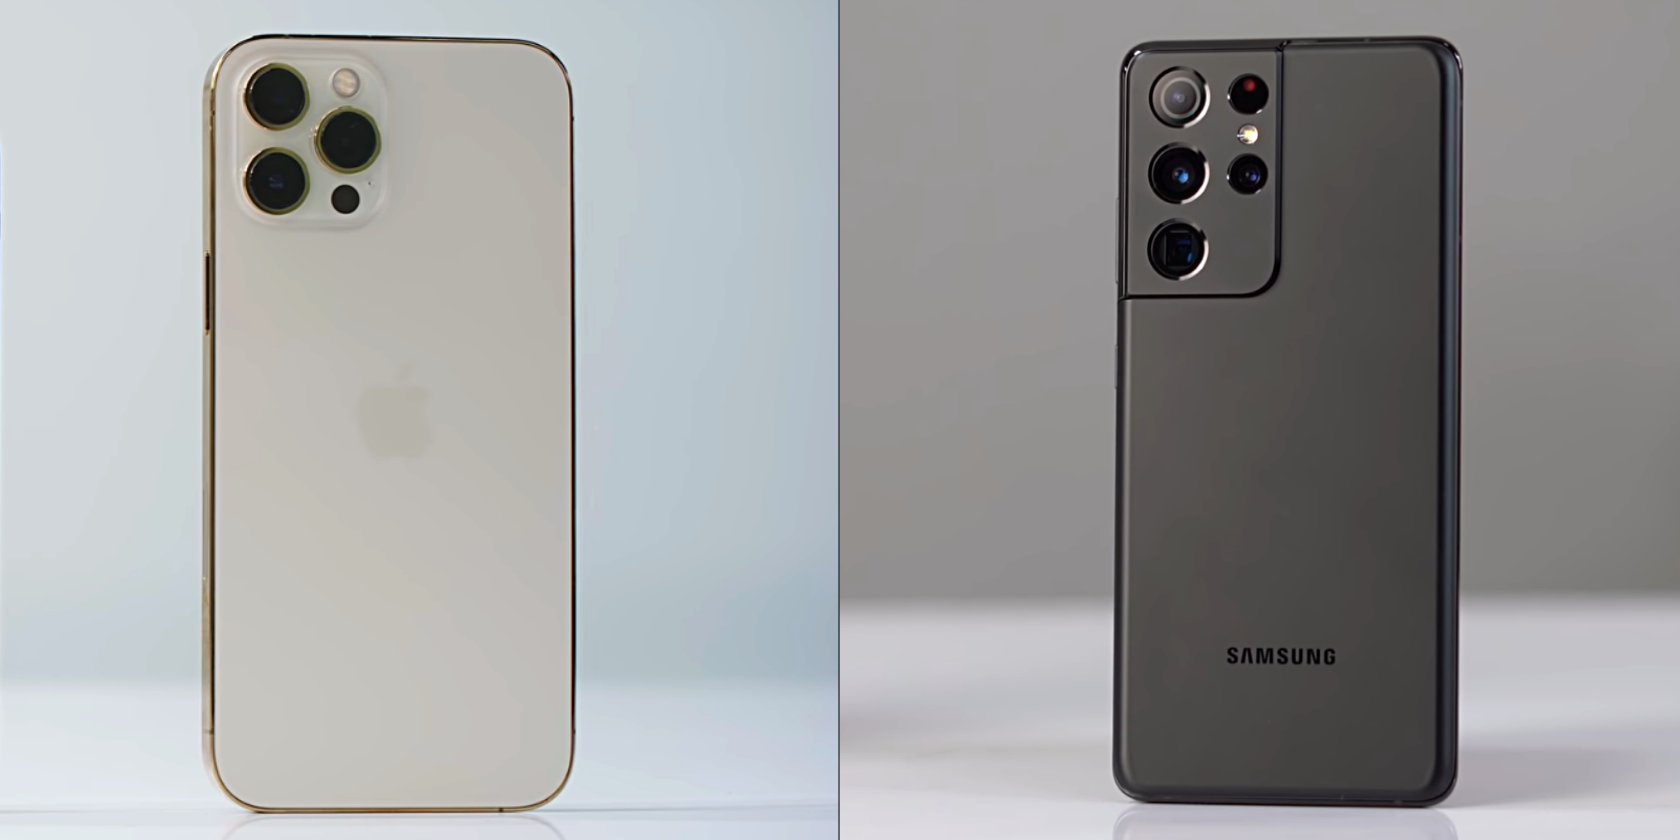 iPhone 12 Pro Max vs Galaxy S21 Ultra Back Marques Brownlee x Beebom - iPhone 12 Pro Max contro Samsung Galaxy S21 Ultra: qual è il migliore?